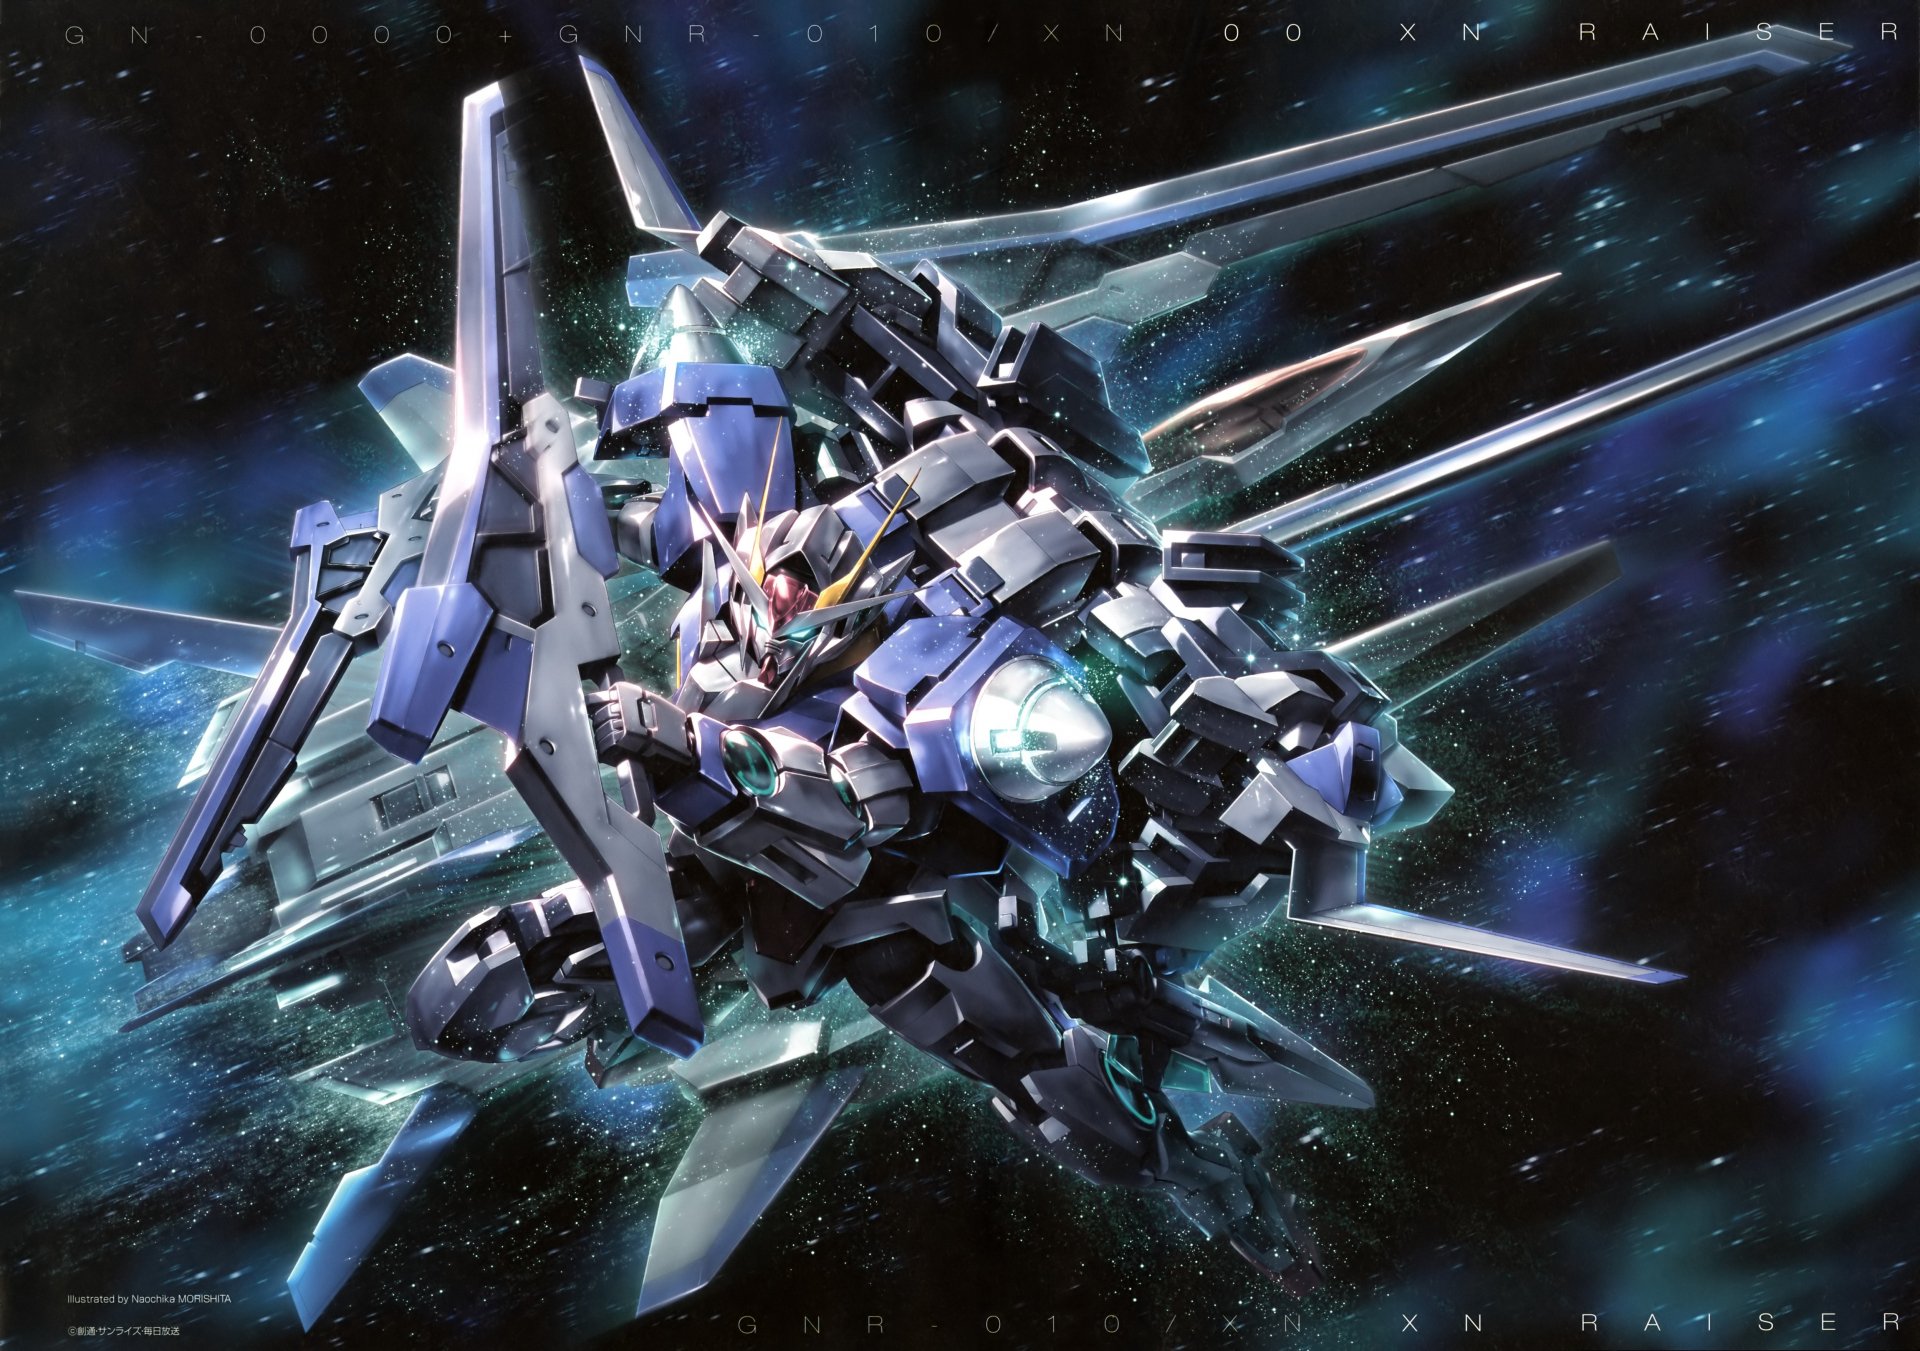 Gundam 4k: Bạn sẽ không muốn bỏ lỡ cơ hội ngắm nhìn bộ sưu tập Gundam đẹp tinh tế và sắc nét nhất với độ phân giải 4k. Hãy xem ngay hình ảnh liên quan để cảm nhận được sự hoành tráng của Gundam 4k.